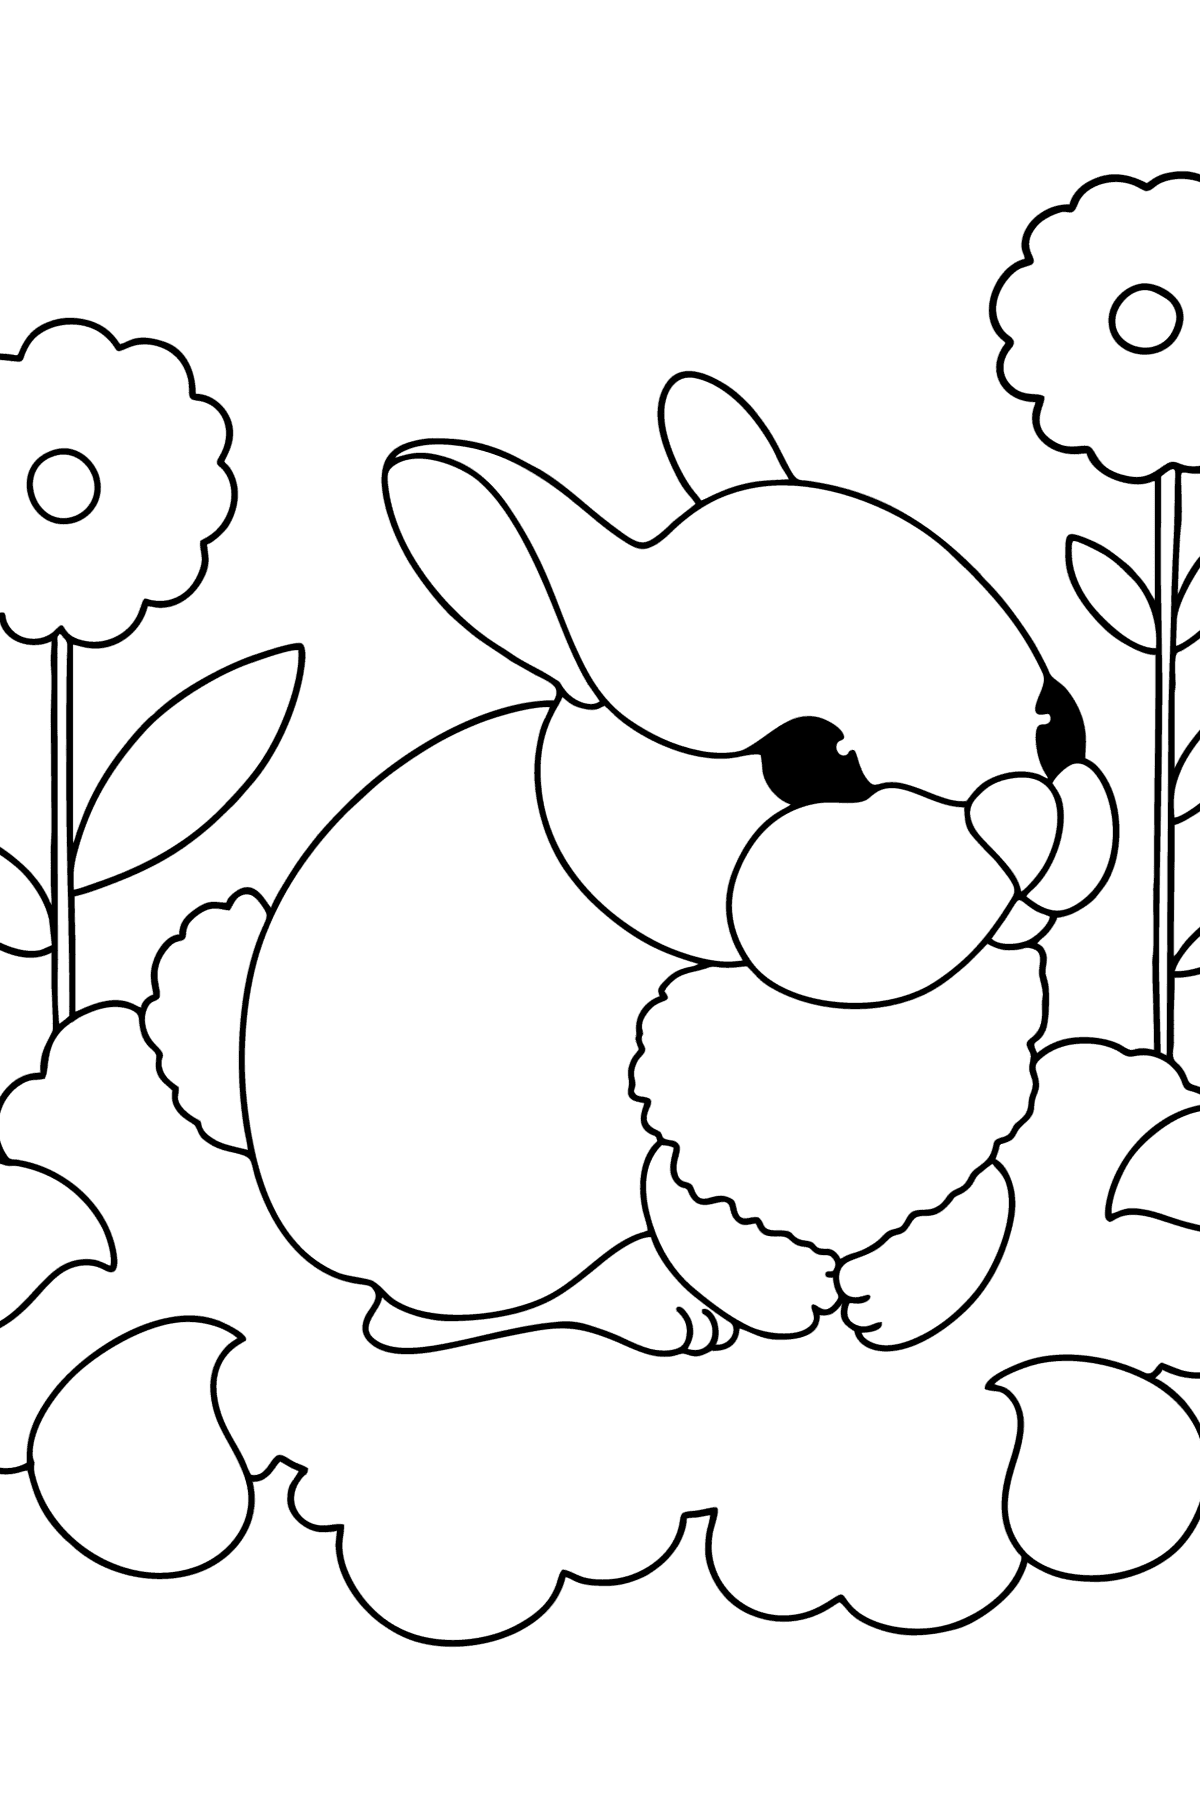 Kleurplaat baby konijn - kleurplaten voor kinderen